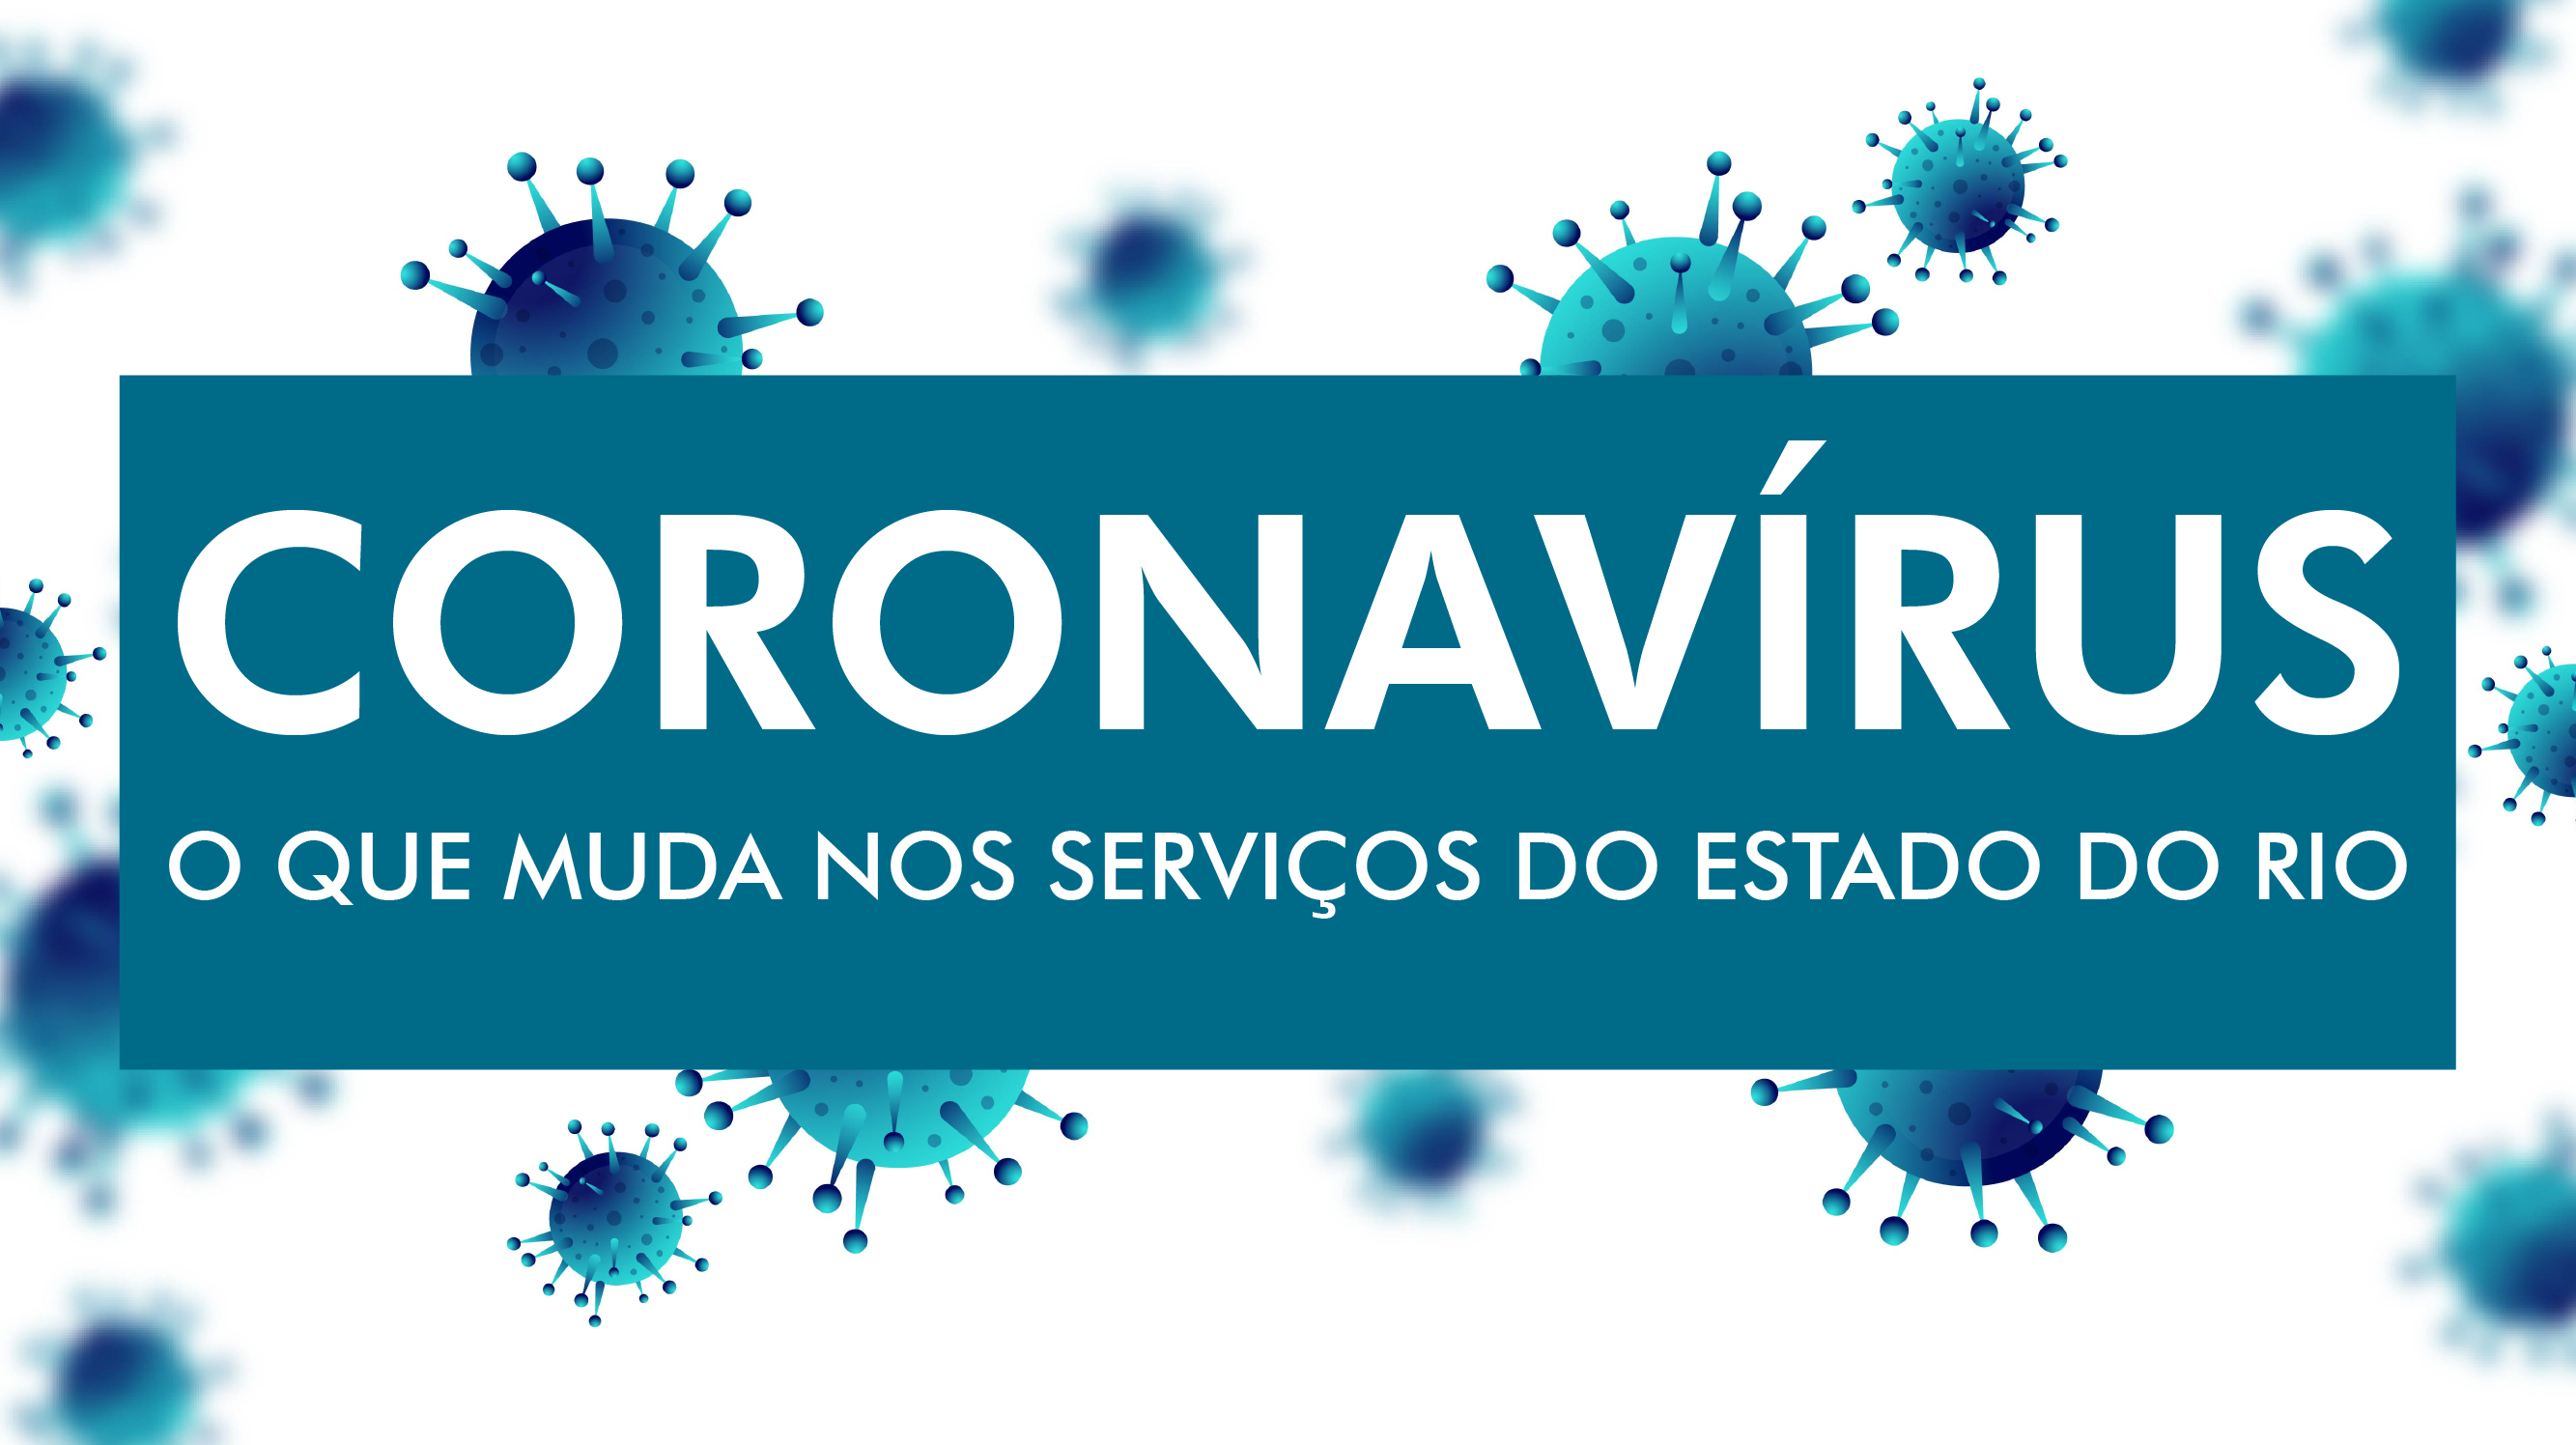  Governo do estado do Rio divulga informações sobre serviços